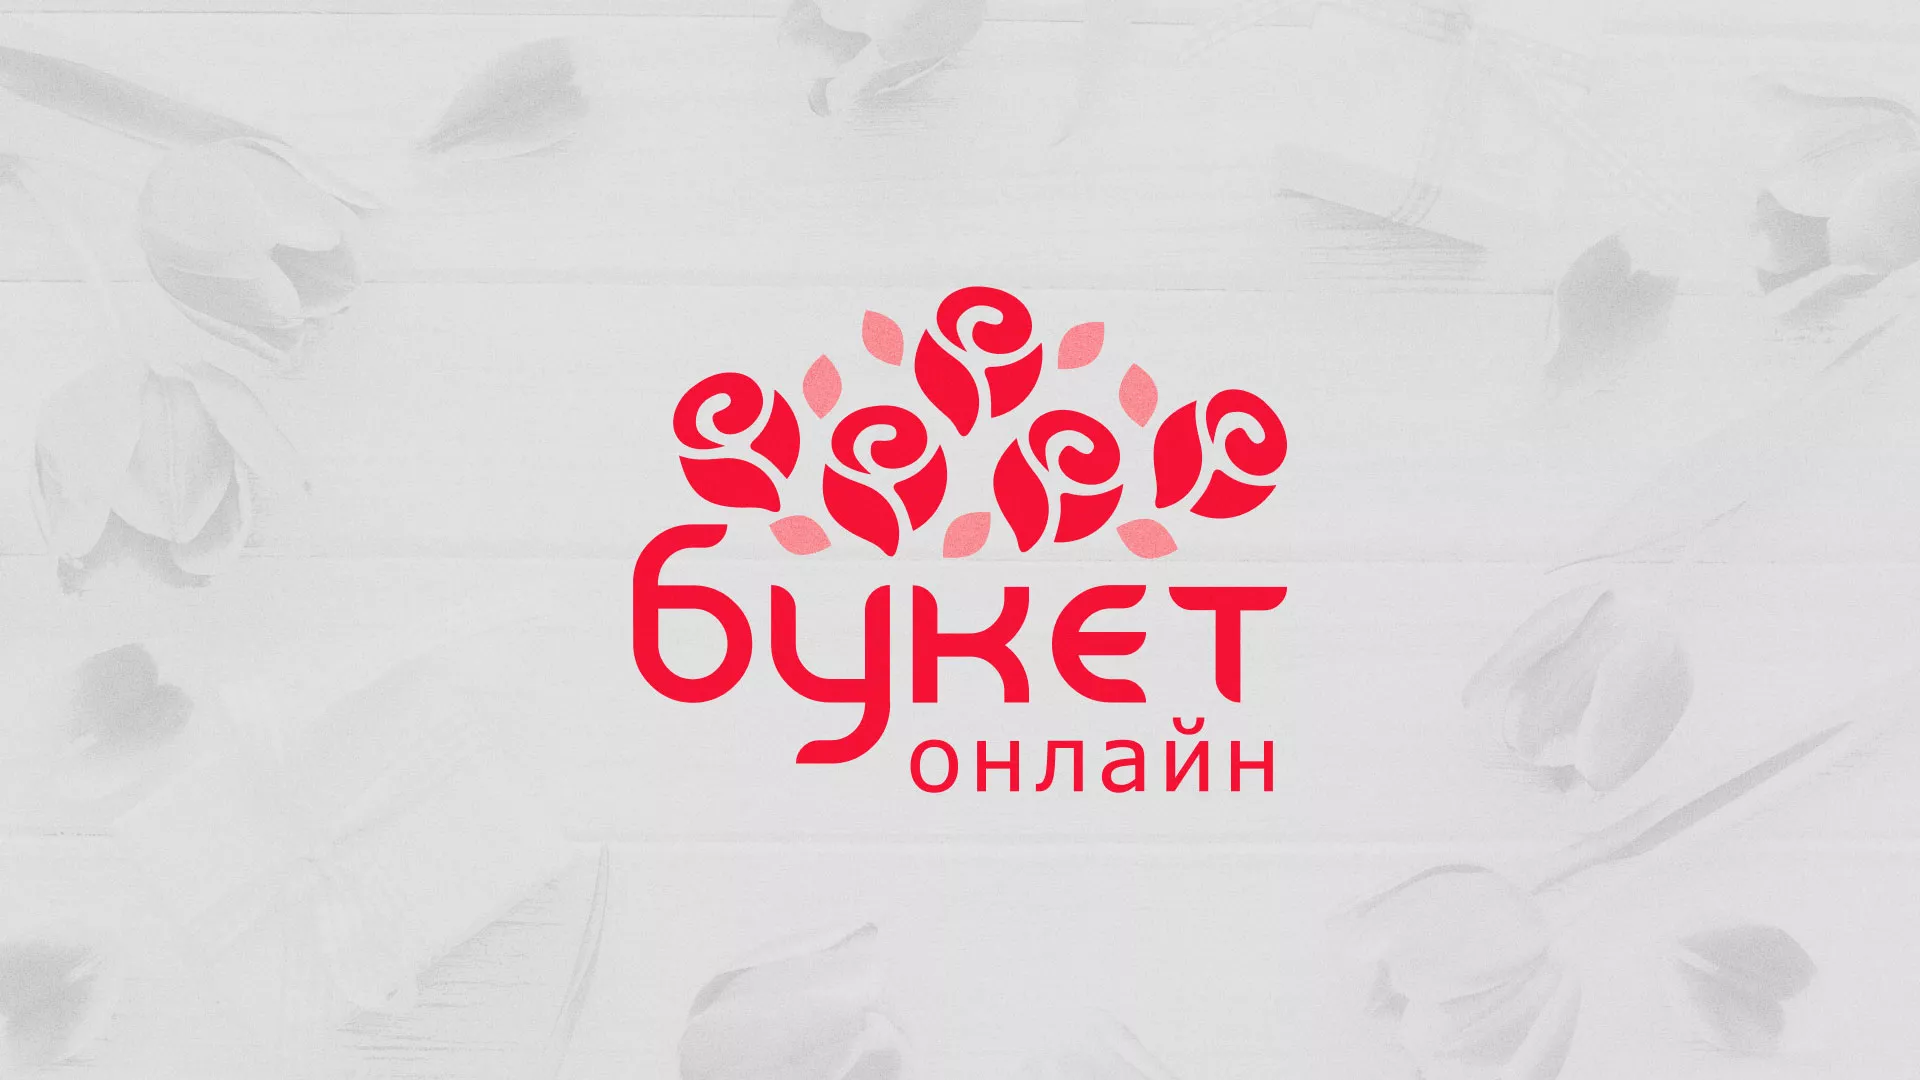 Создание интернет-магазина «Букет-онлайн» по цветам в Ульяновске